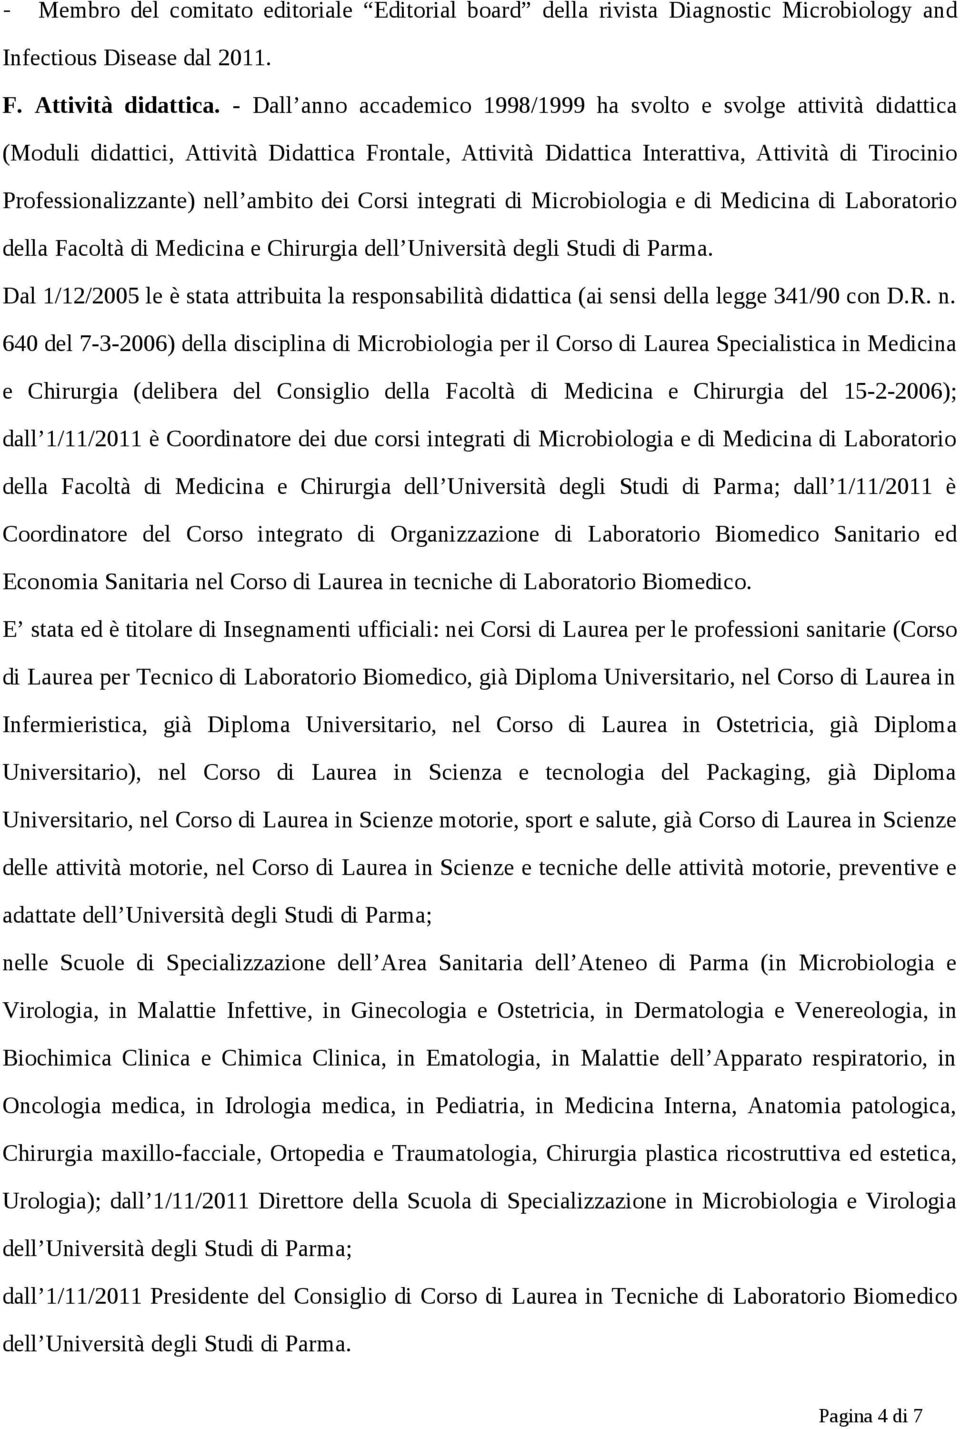 ambito dei Corsi integrati di Microbiologia e di Medicina di Laboratorio della Facoltà di Medicina e Chirurgia dell Università degli Studi di Parma.